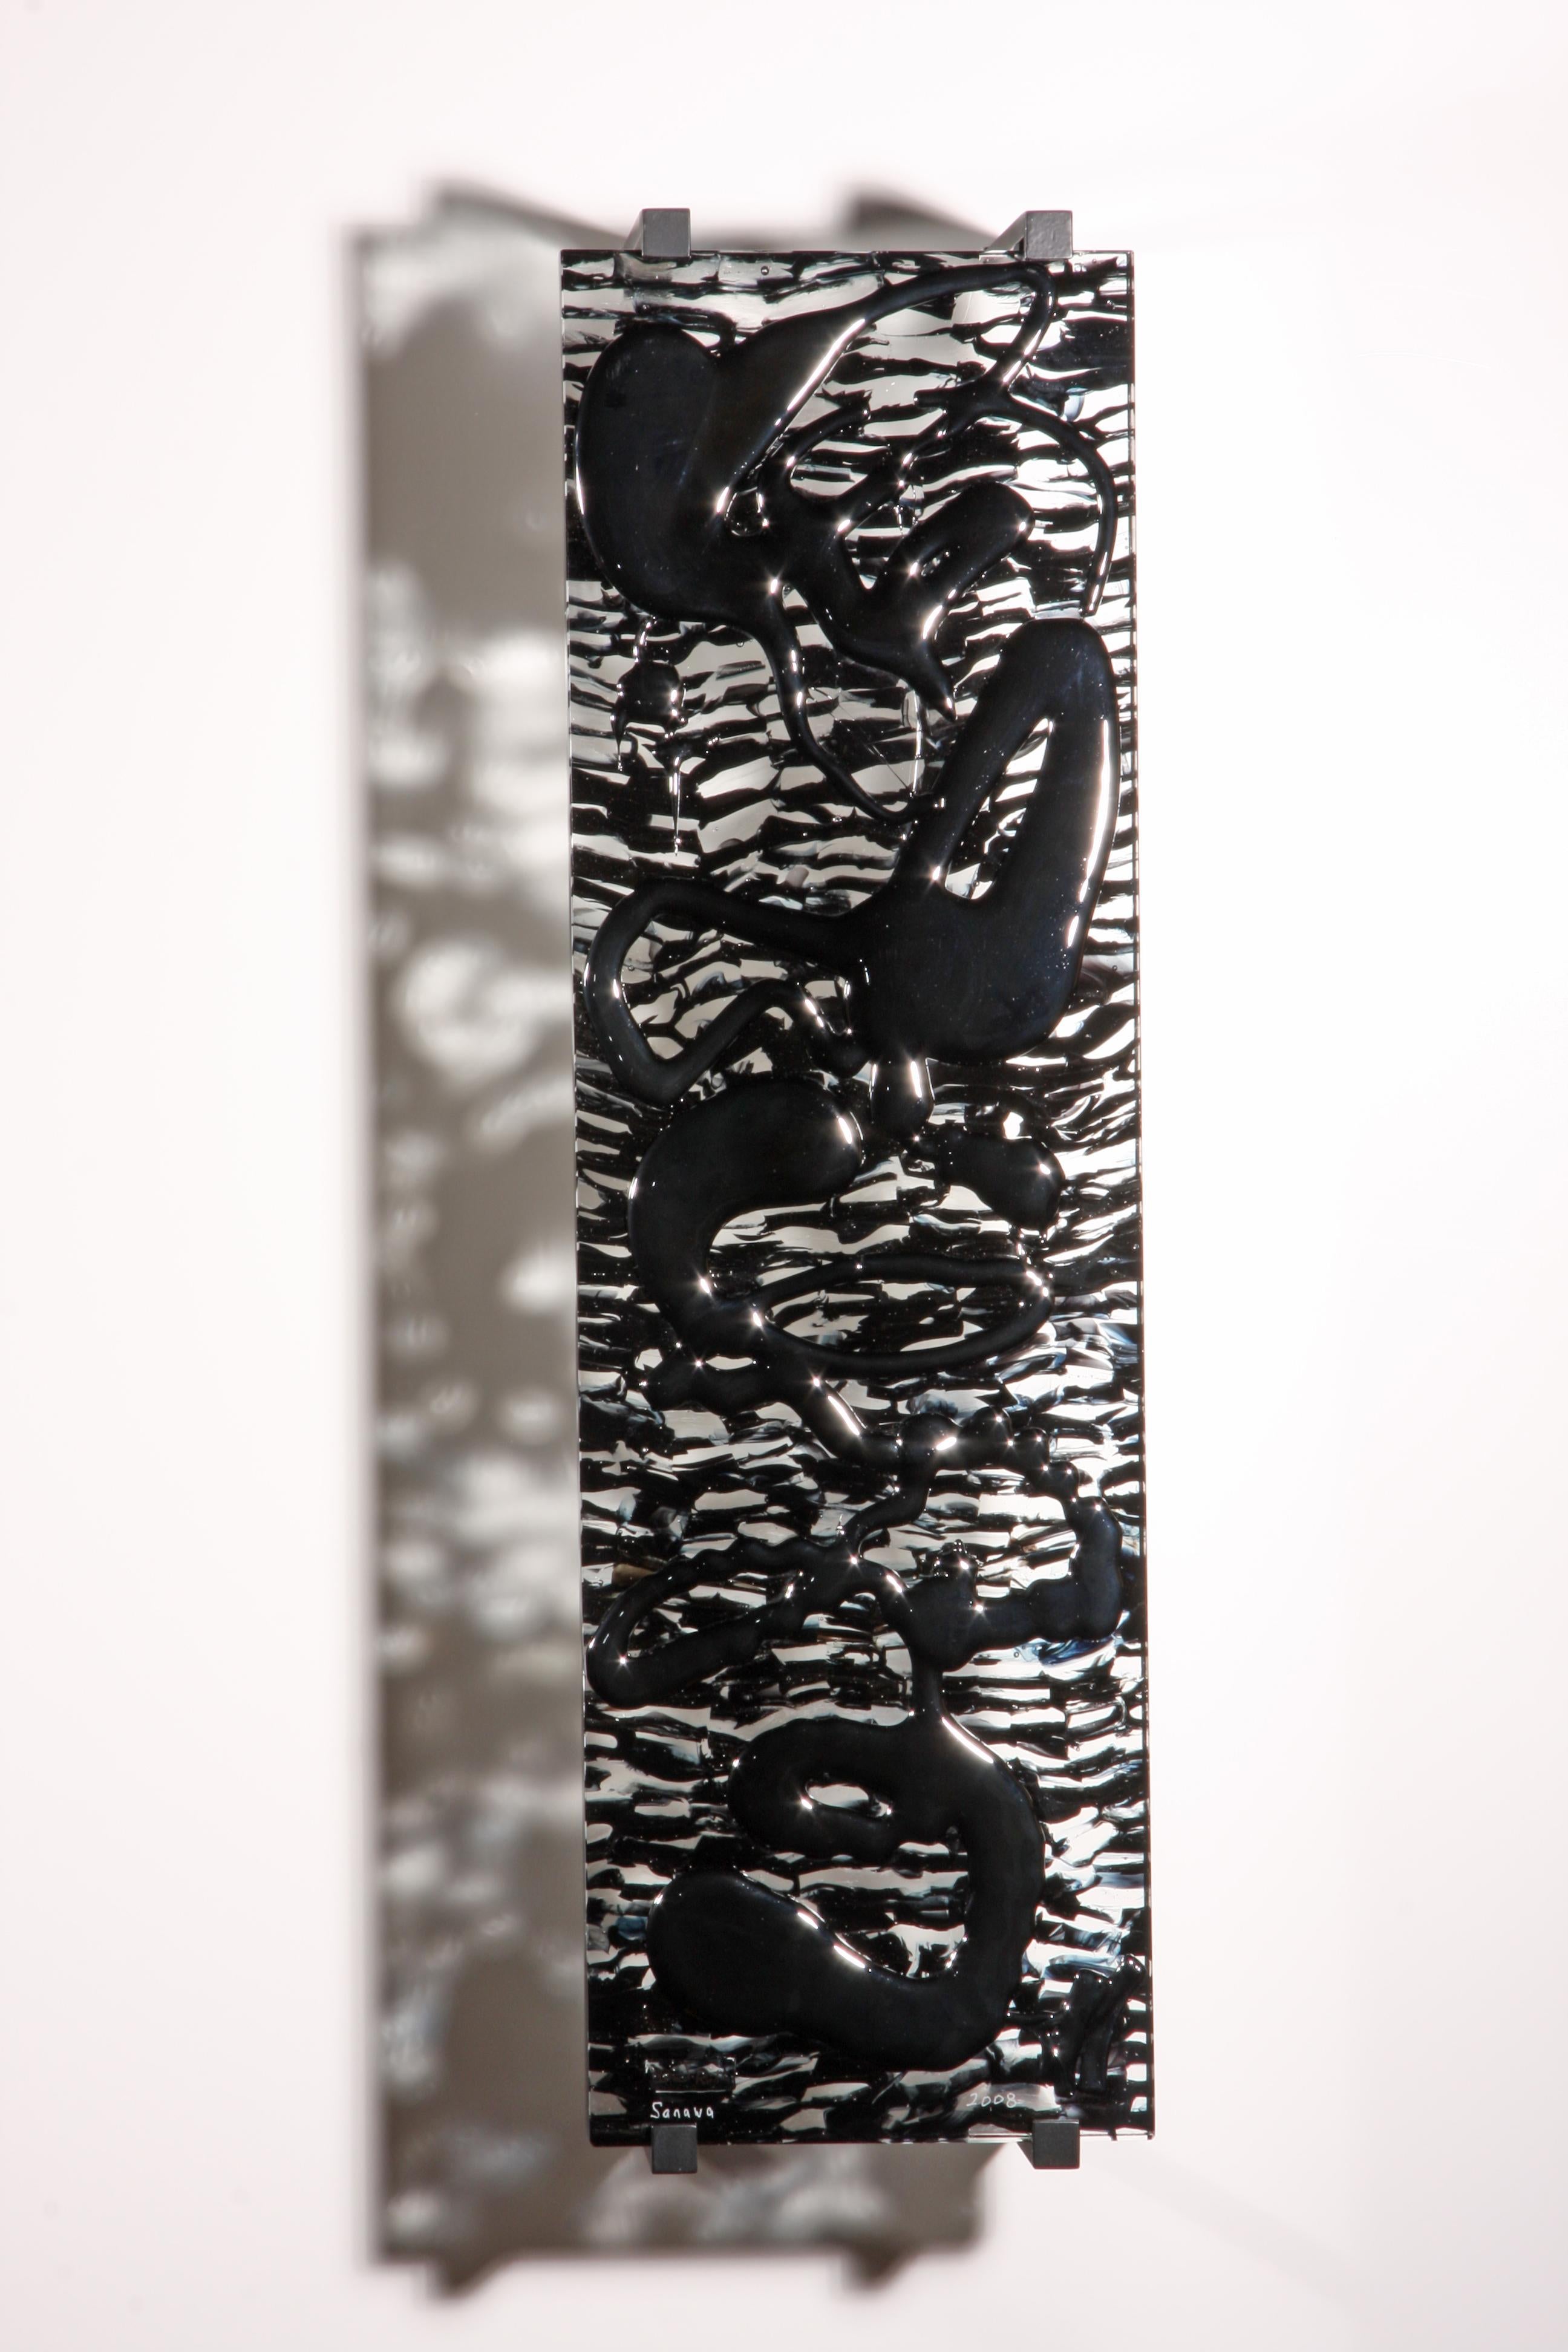 Sculpture abstraite en verre coulé abstrait, Sanawa, 2008 de David Ruth